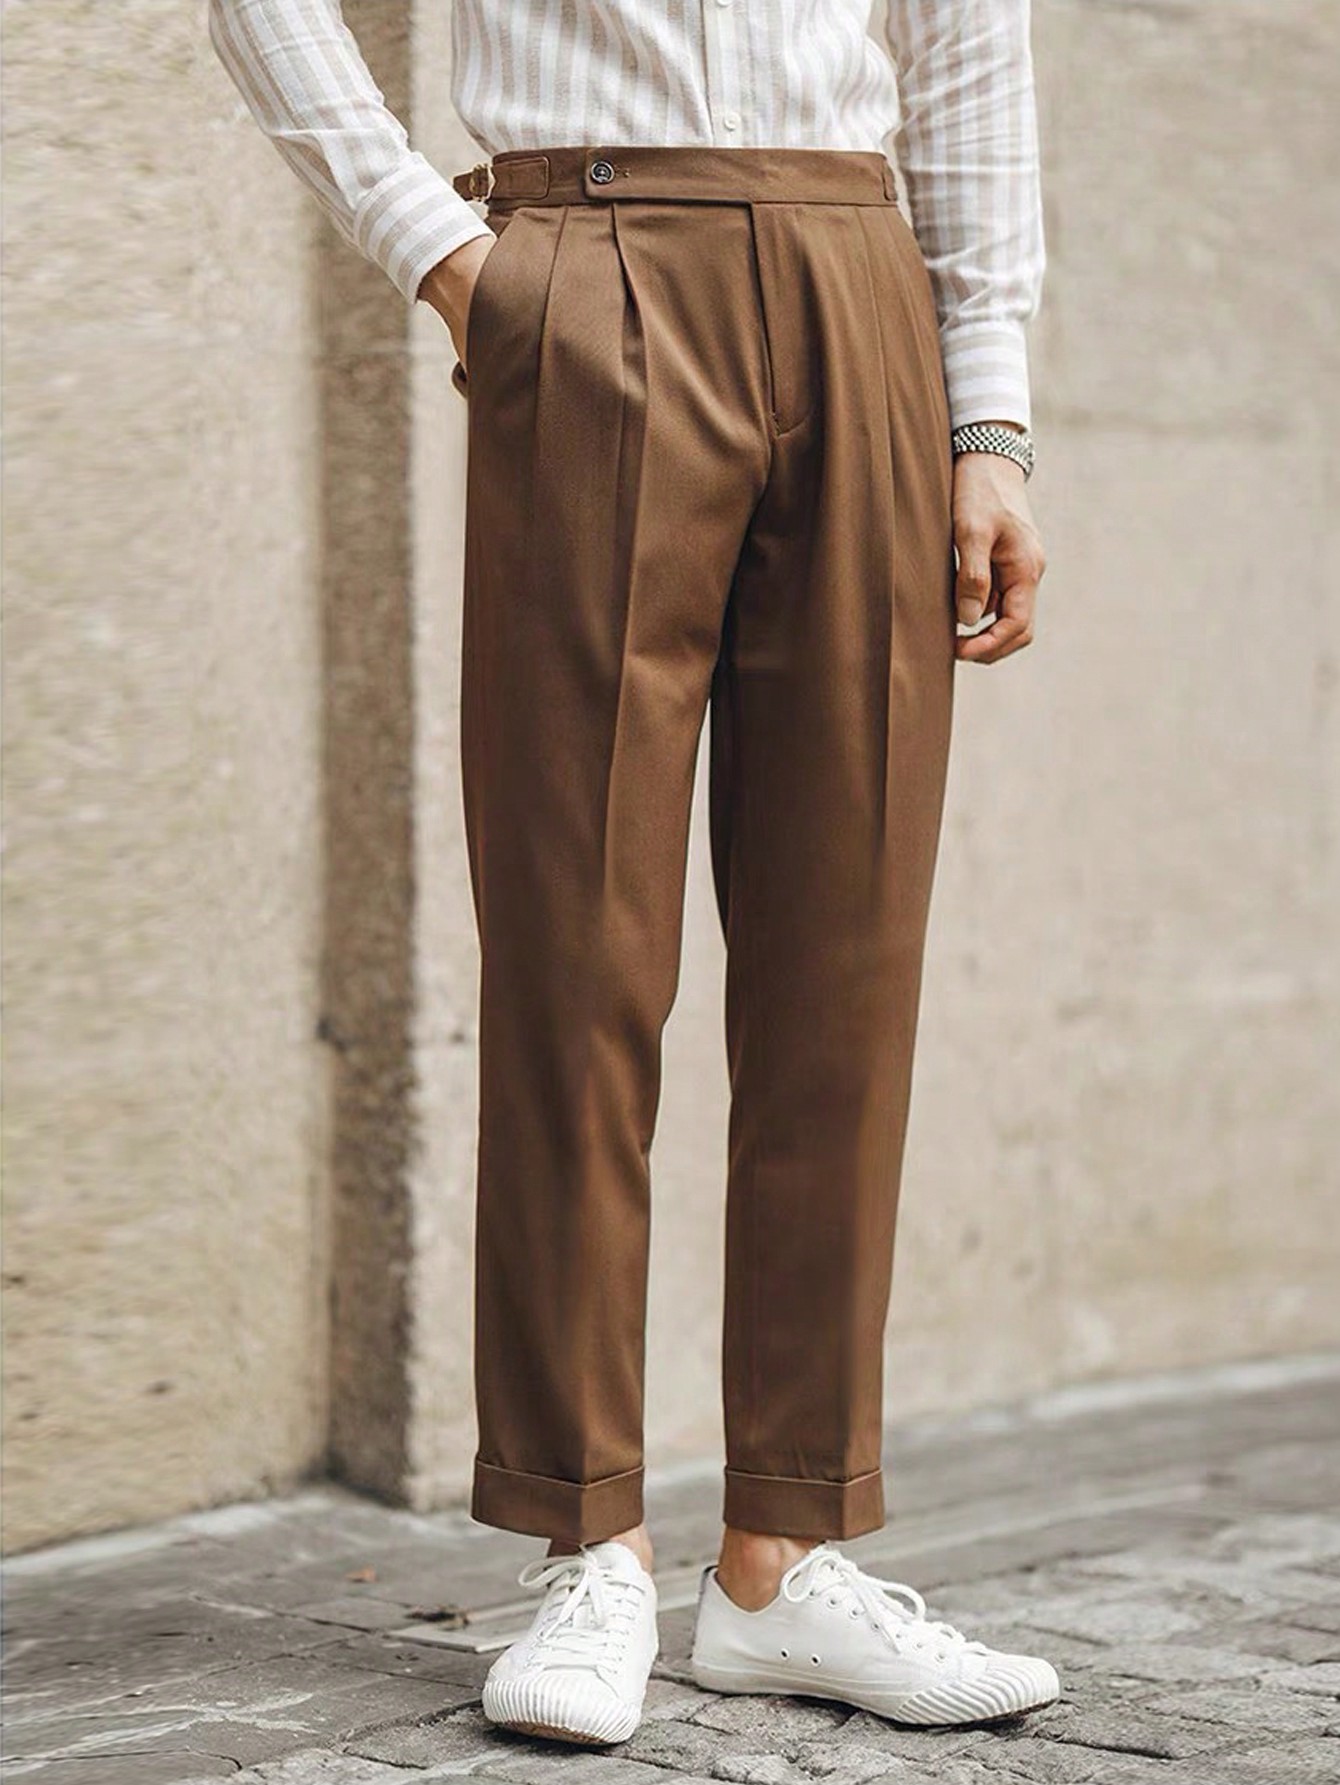 Мужские классические брюки со складками Manfinity Mode, кофейный коричневый